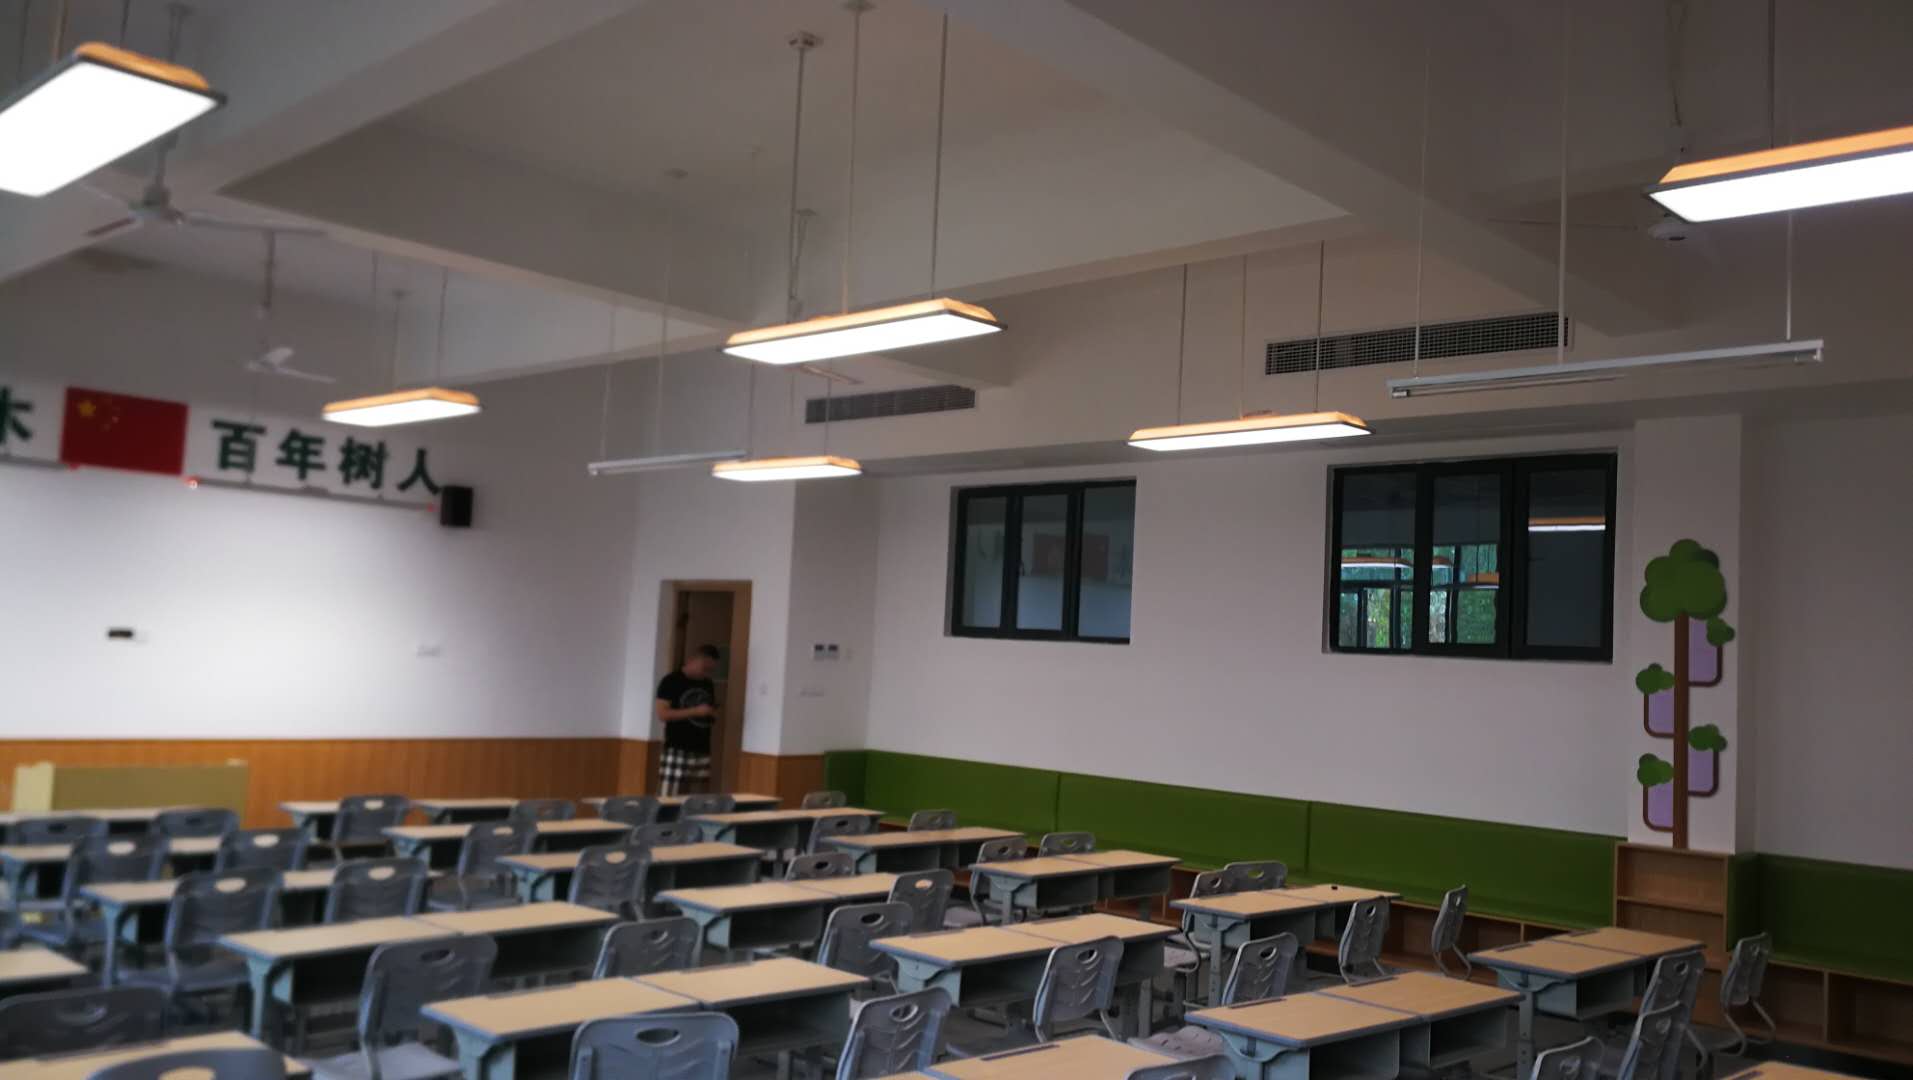 改善教室照明环境，维格教育照明来实现！